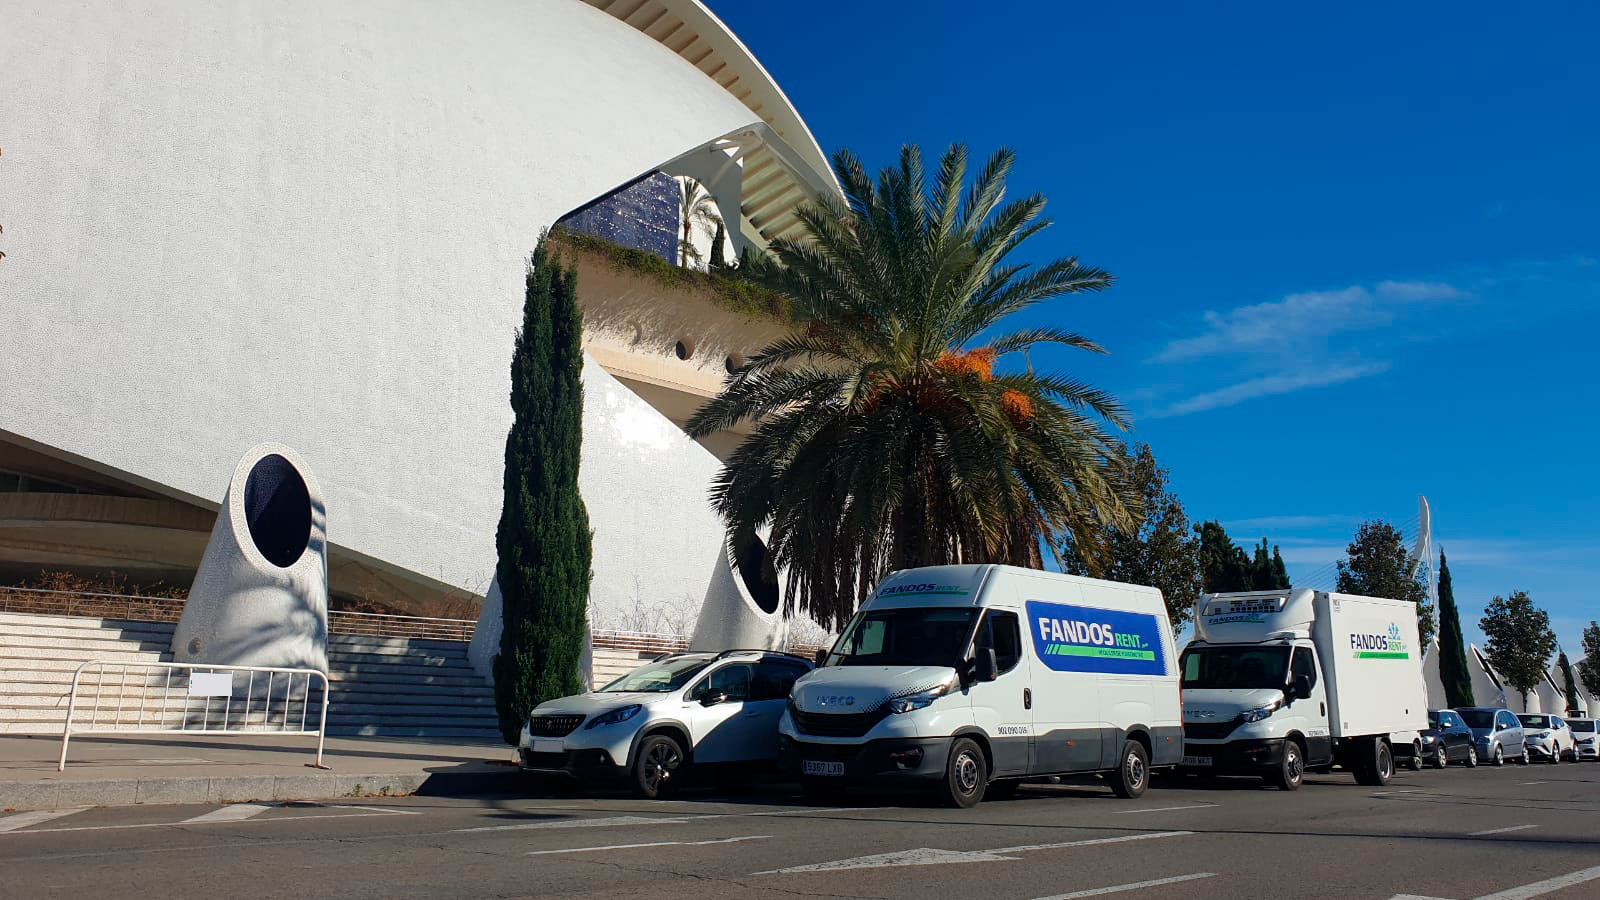 Alquiler furgonetas valencia - Alquiler a largo plazo en Teruel o Valencia